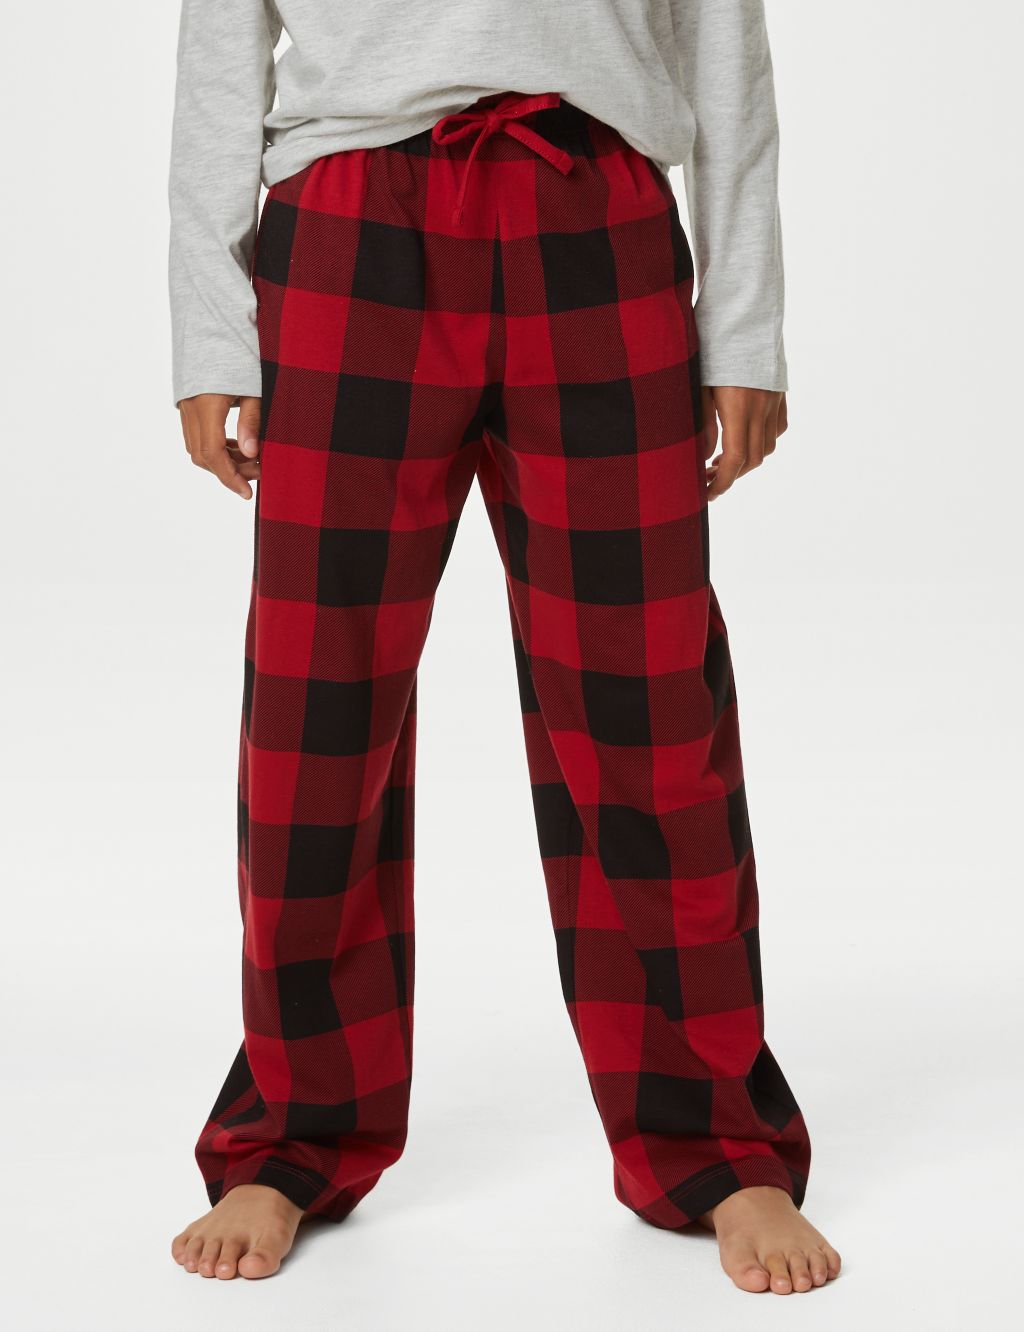 Kids' Checked Family Christmas Pyjama Set (1-16 Yrs) image 4